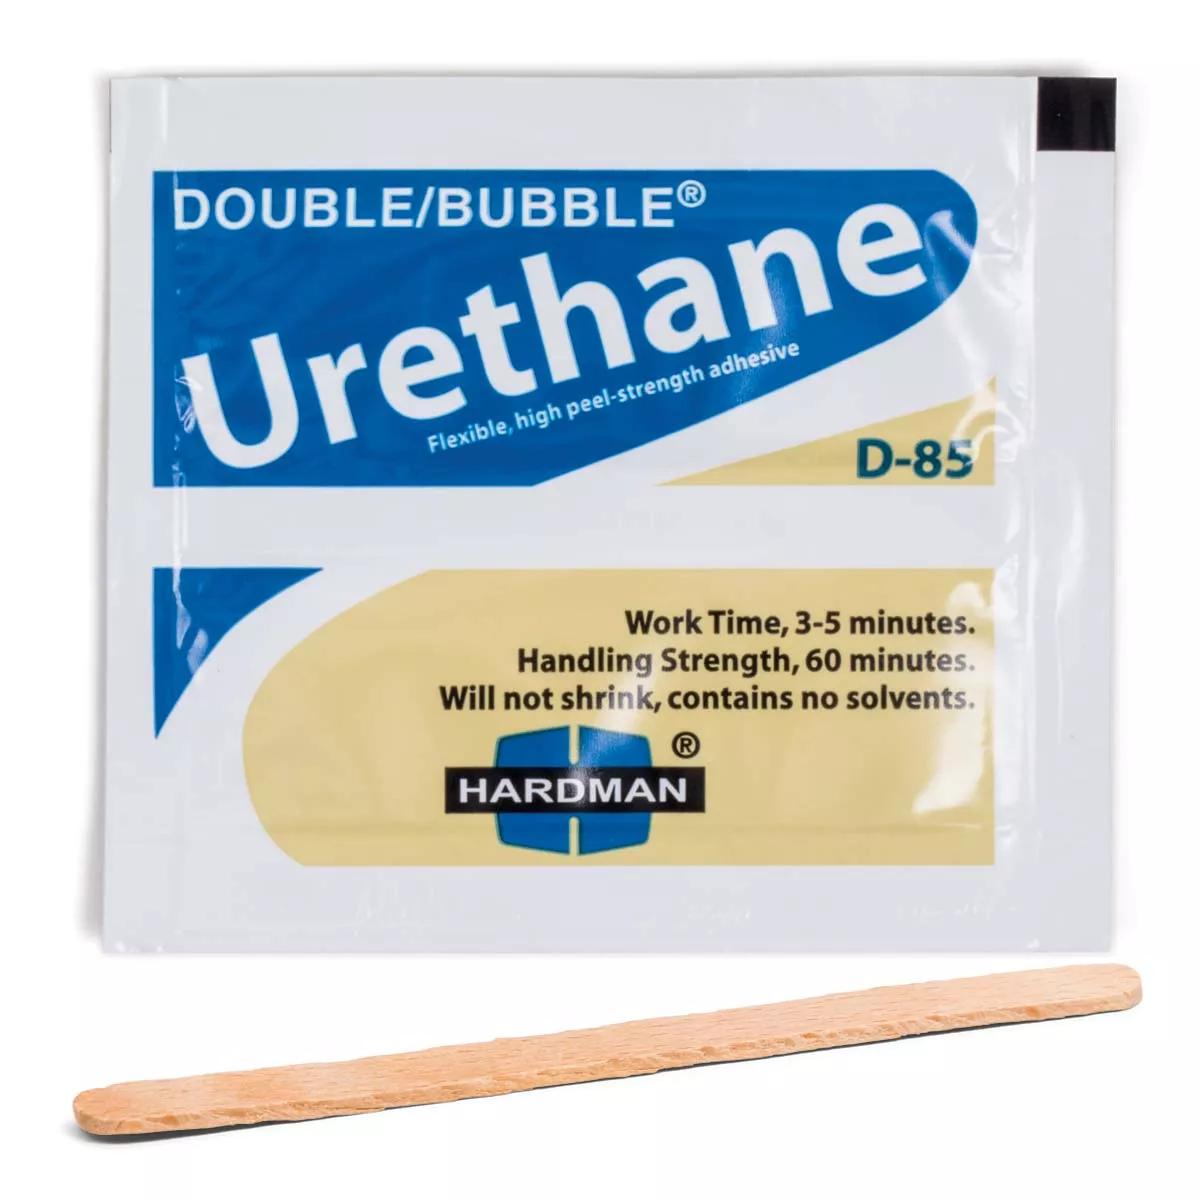 Single-Use Urethane Adhesive